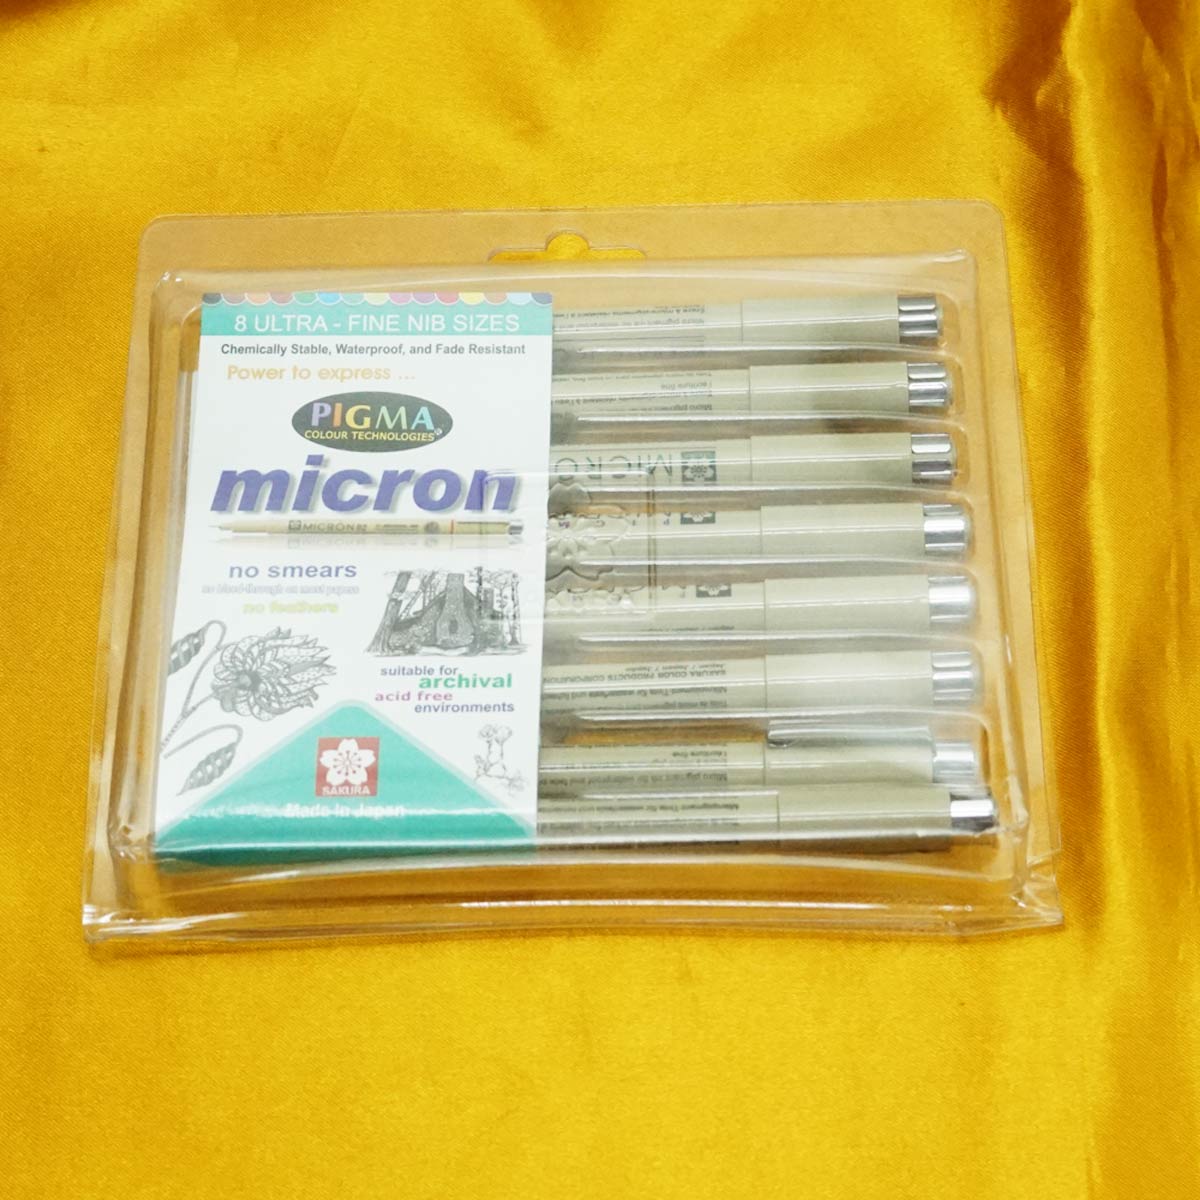 Sakura Pigma Micron Pens - Set of 8, Black, Assorted Sizes